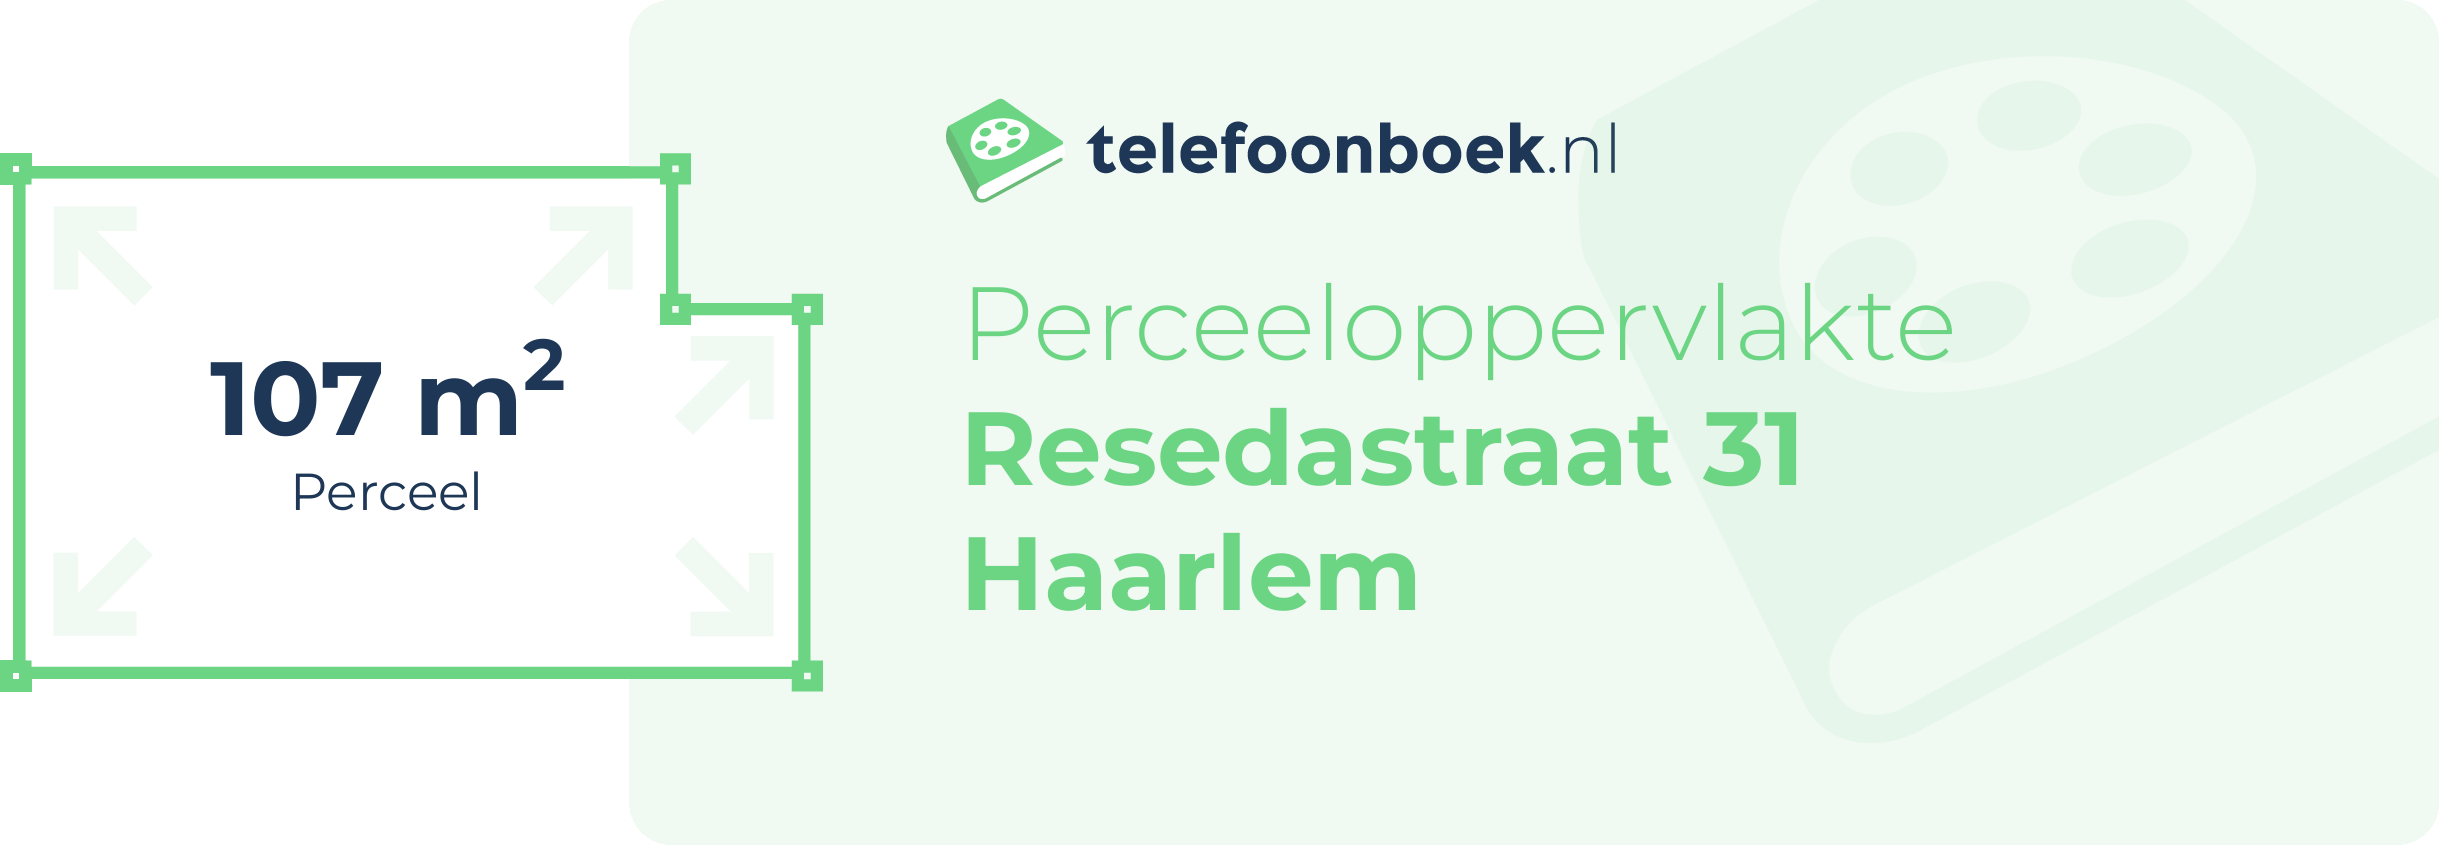 Perceeloppervlakte Resedastraat 31 Haarlem